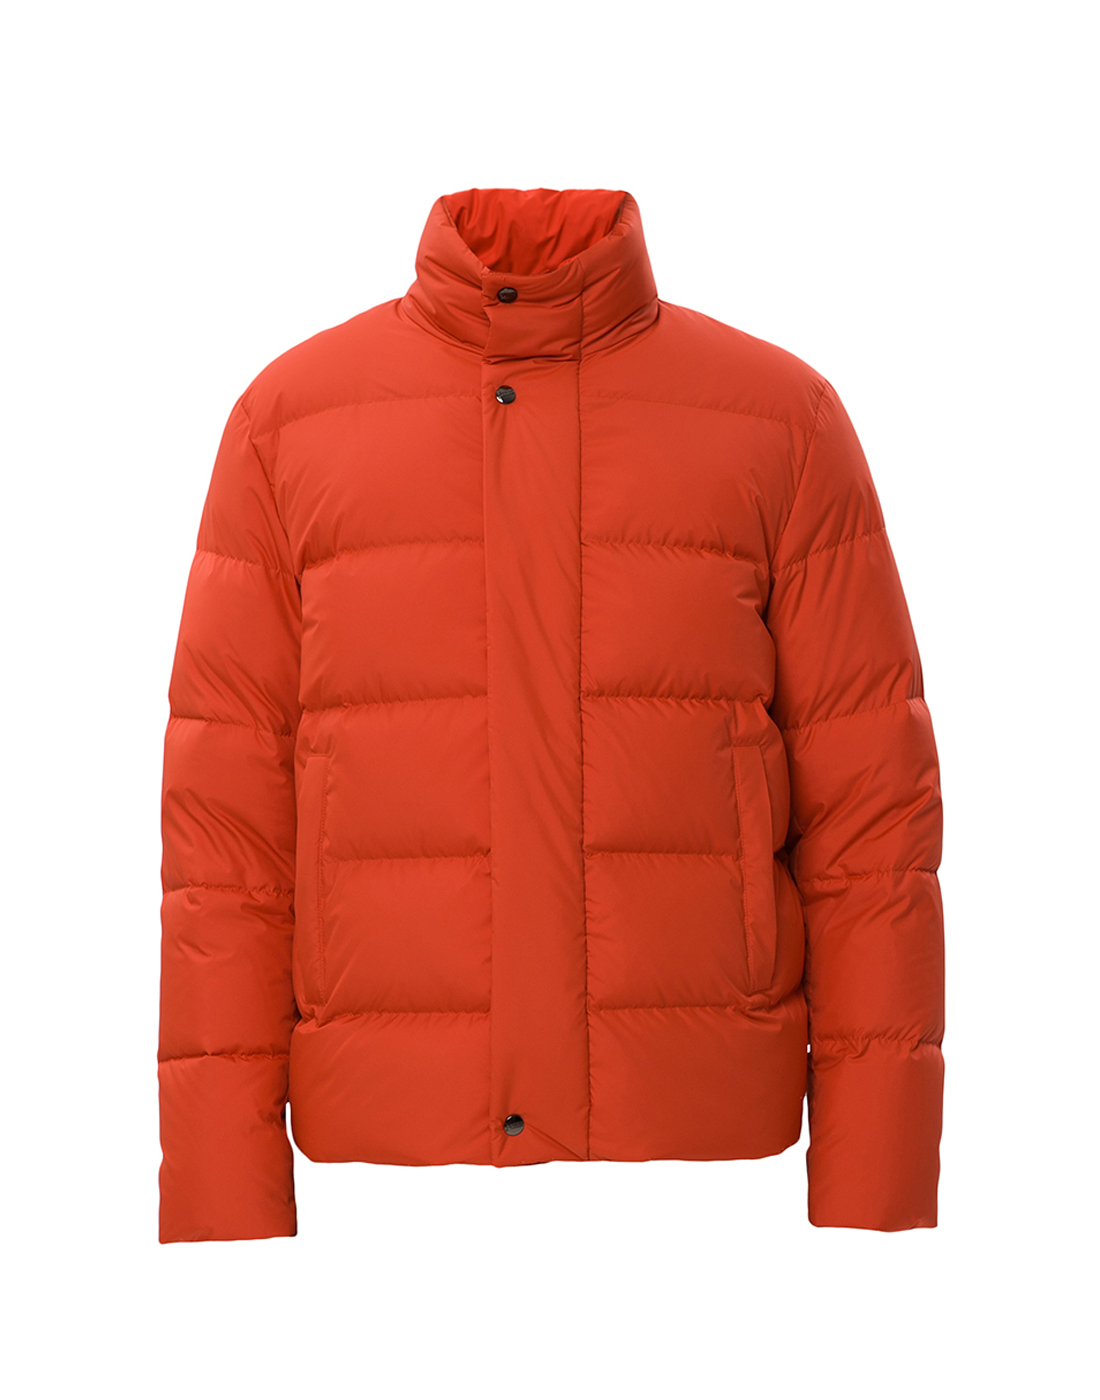 Куртка оранжевая мужская Herno SPI000928U-12471-5850-1